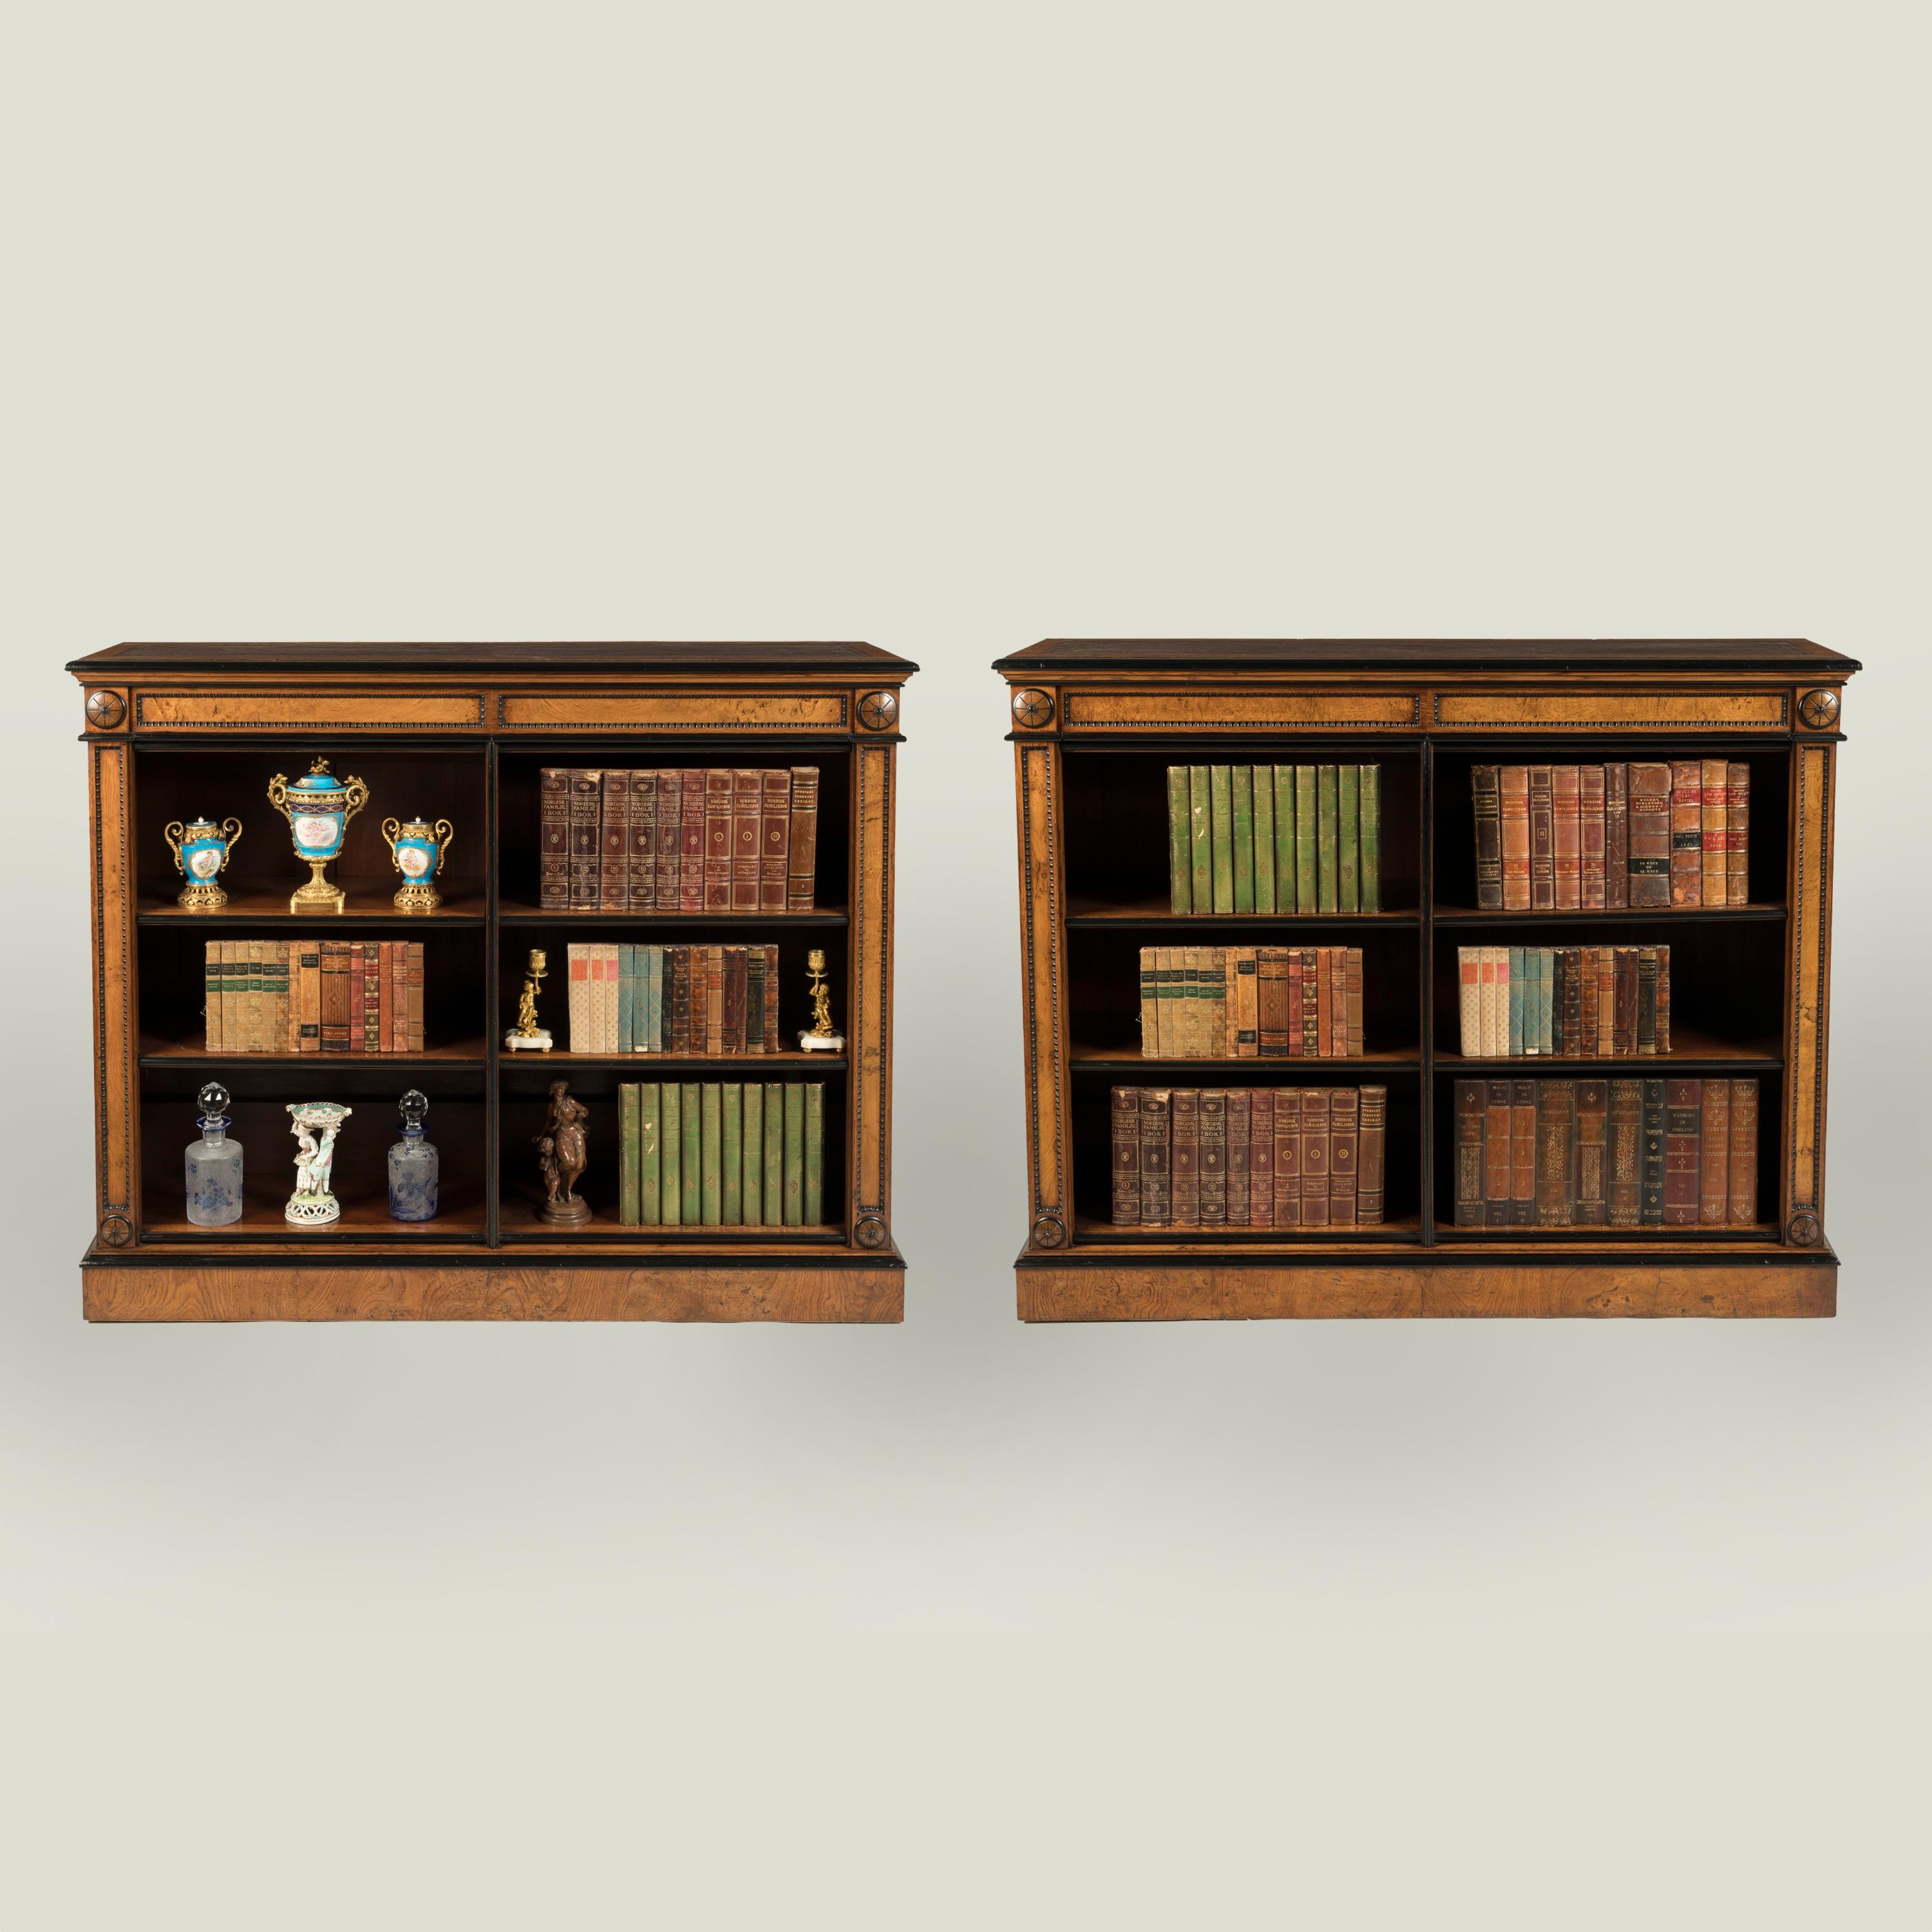 Ein feines Paar Eichenholz-Zwerg-Bücherregale

Konstruiert aus Eichenholz mit ebonisierten Details; jedes offene Bücherregal steht auf einem geformten Sockel; mit einer Anordnung von verstellbaren Einlegeböden, die Pfosten mit vertieften Paneelen,